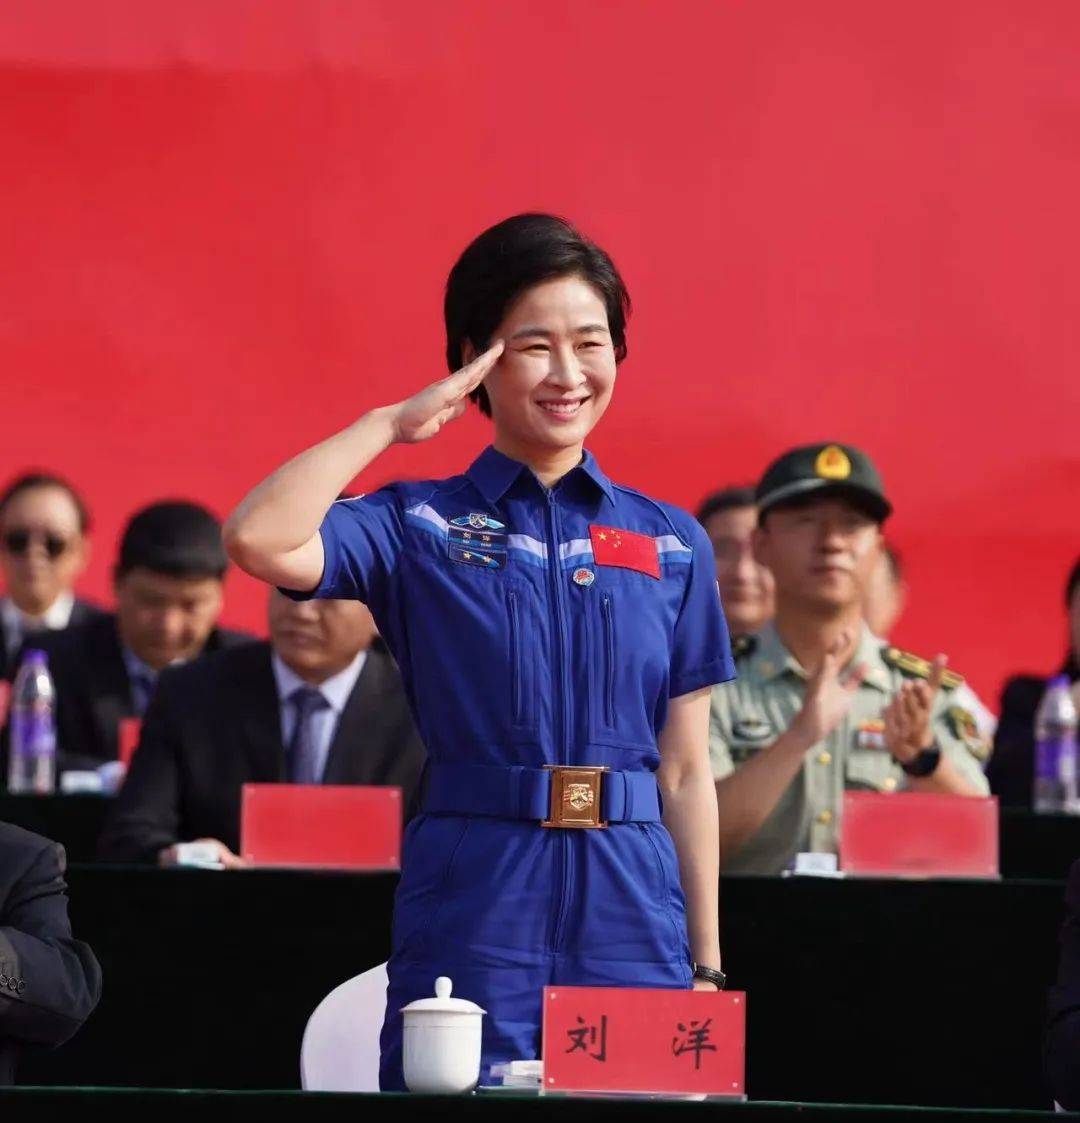 中国首位女航天员刘洋现身郑州大学开学典礼